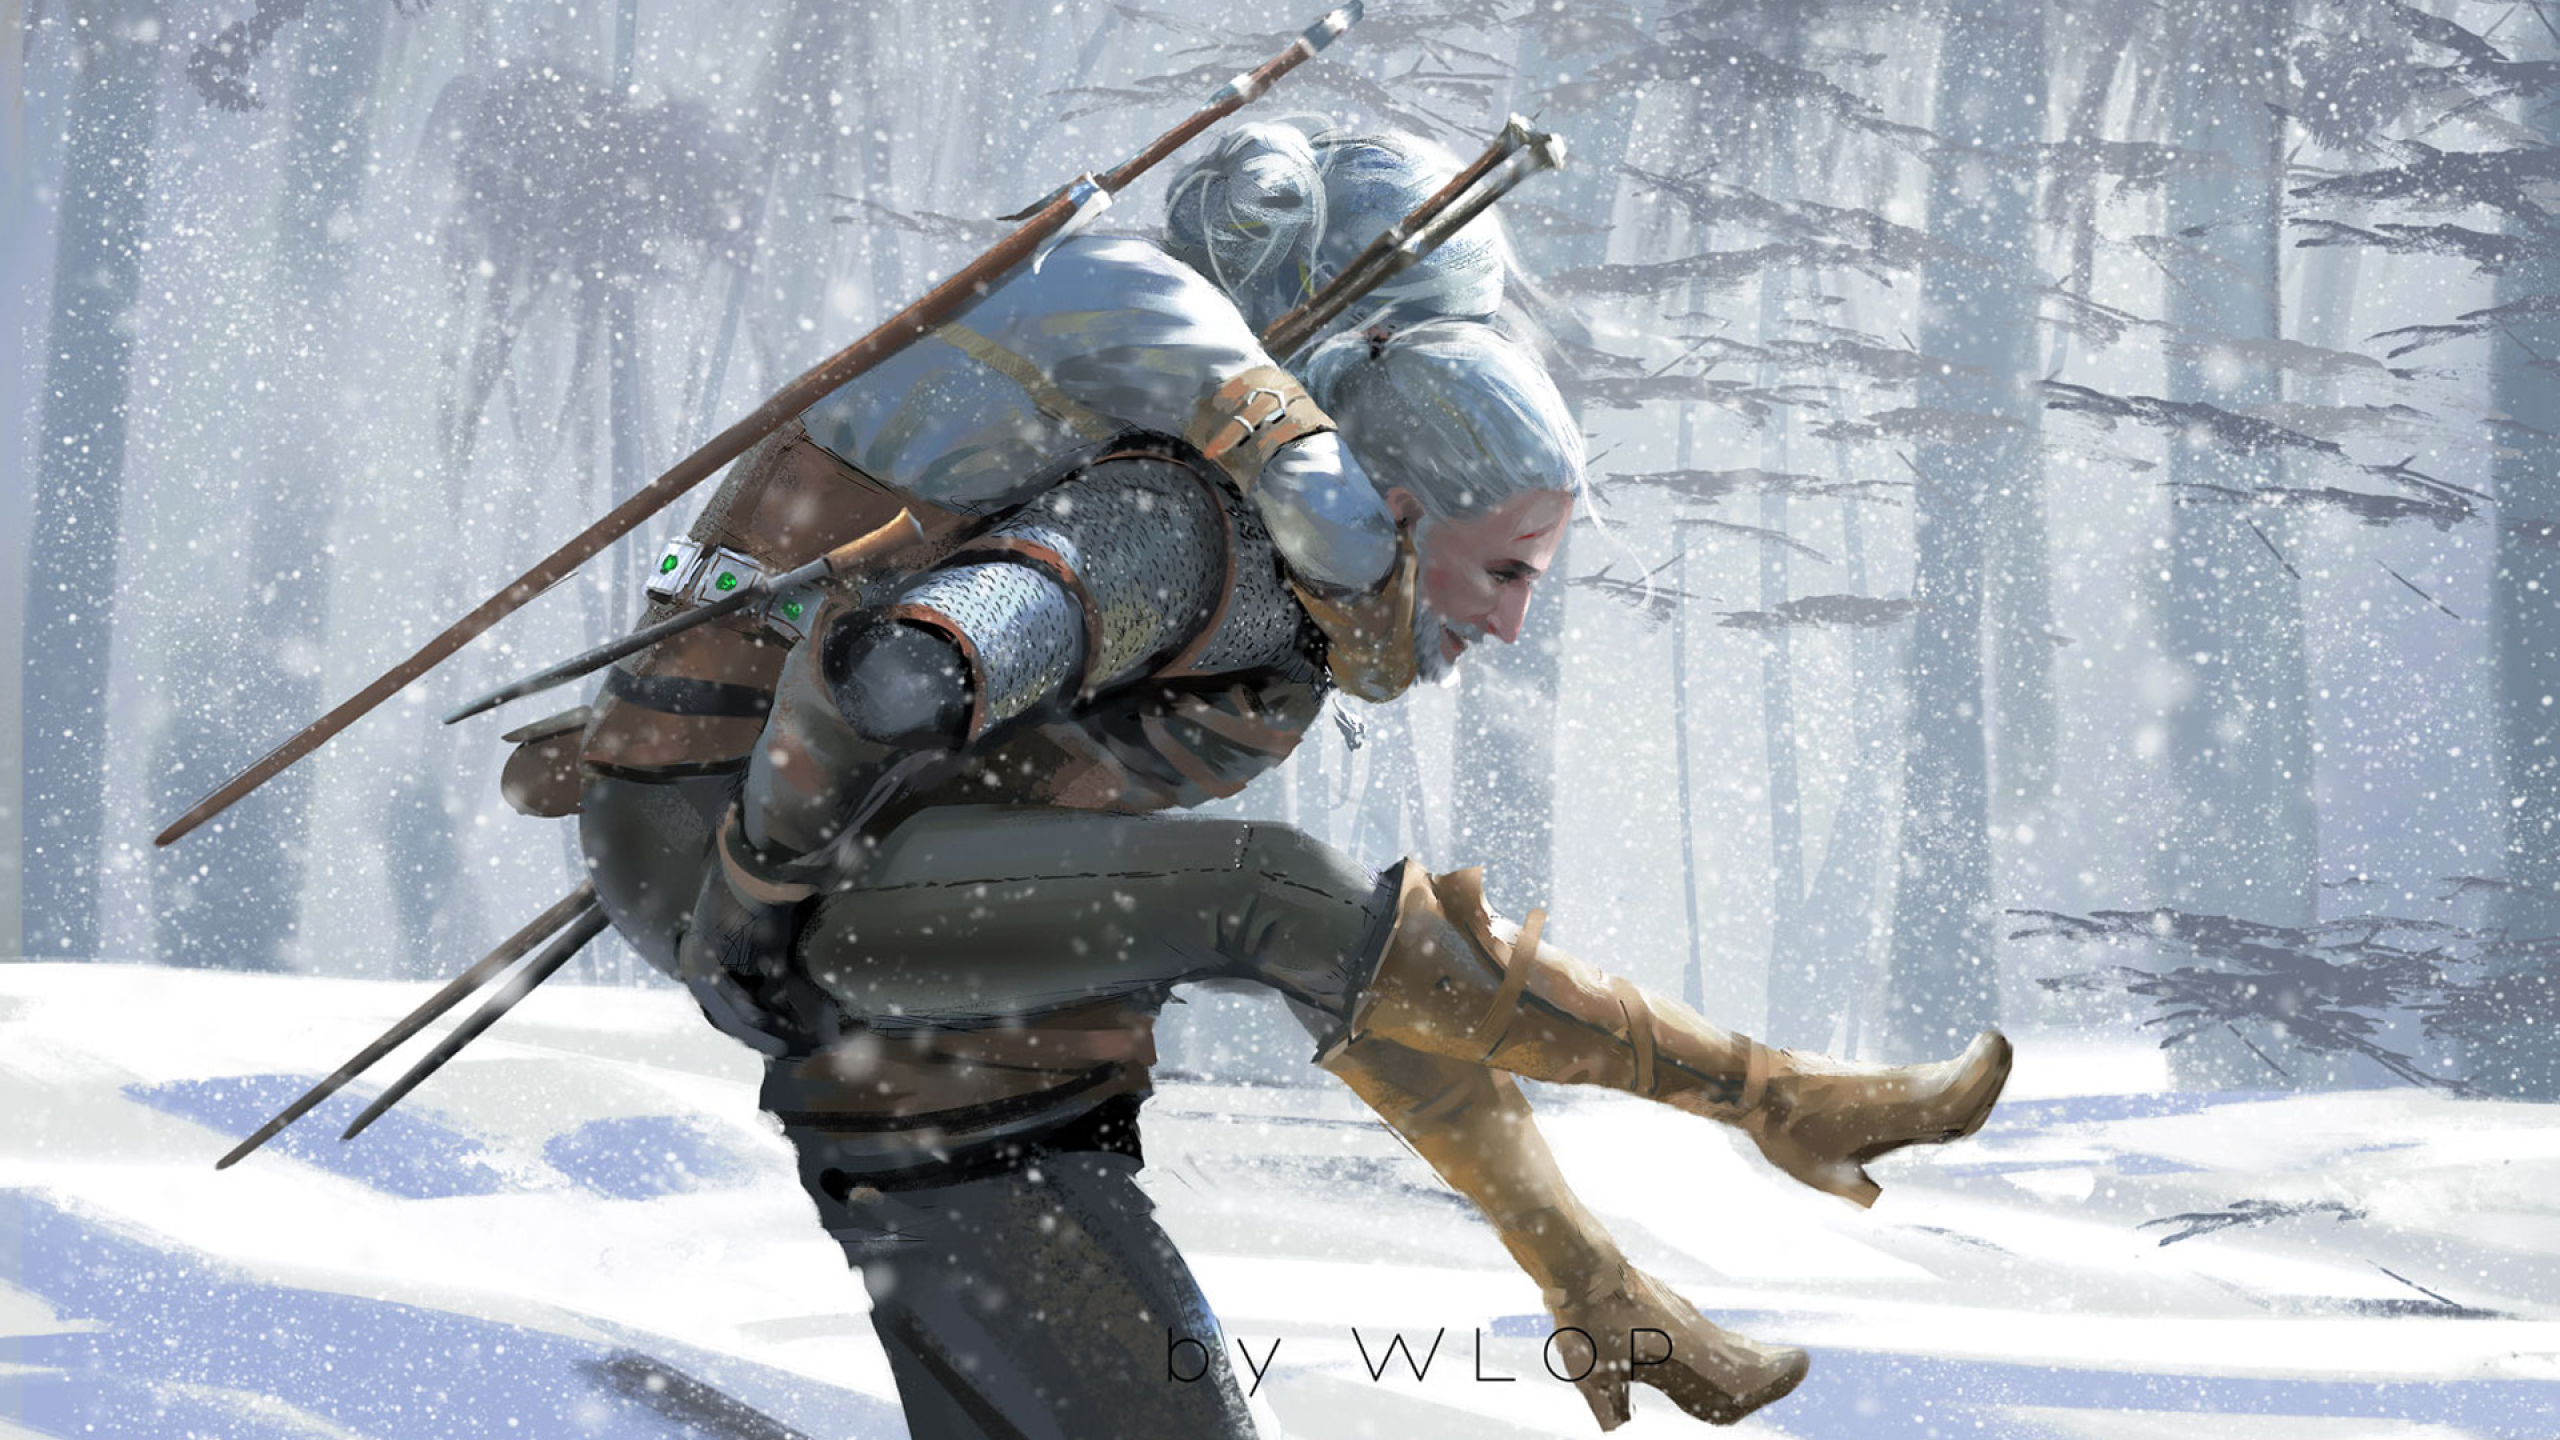 2560x1440 The Witcher 3 Wild Hunt Artwork 1440p Resolution